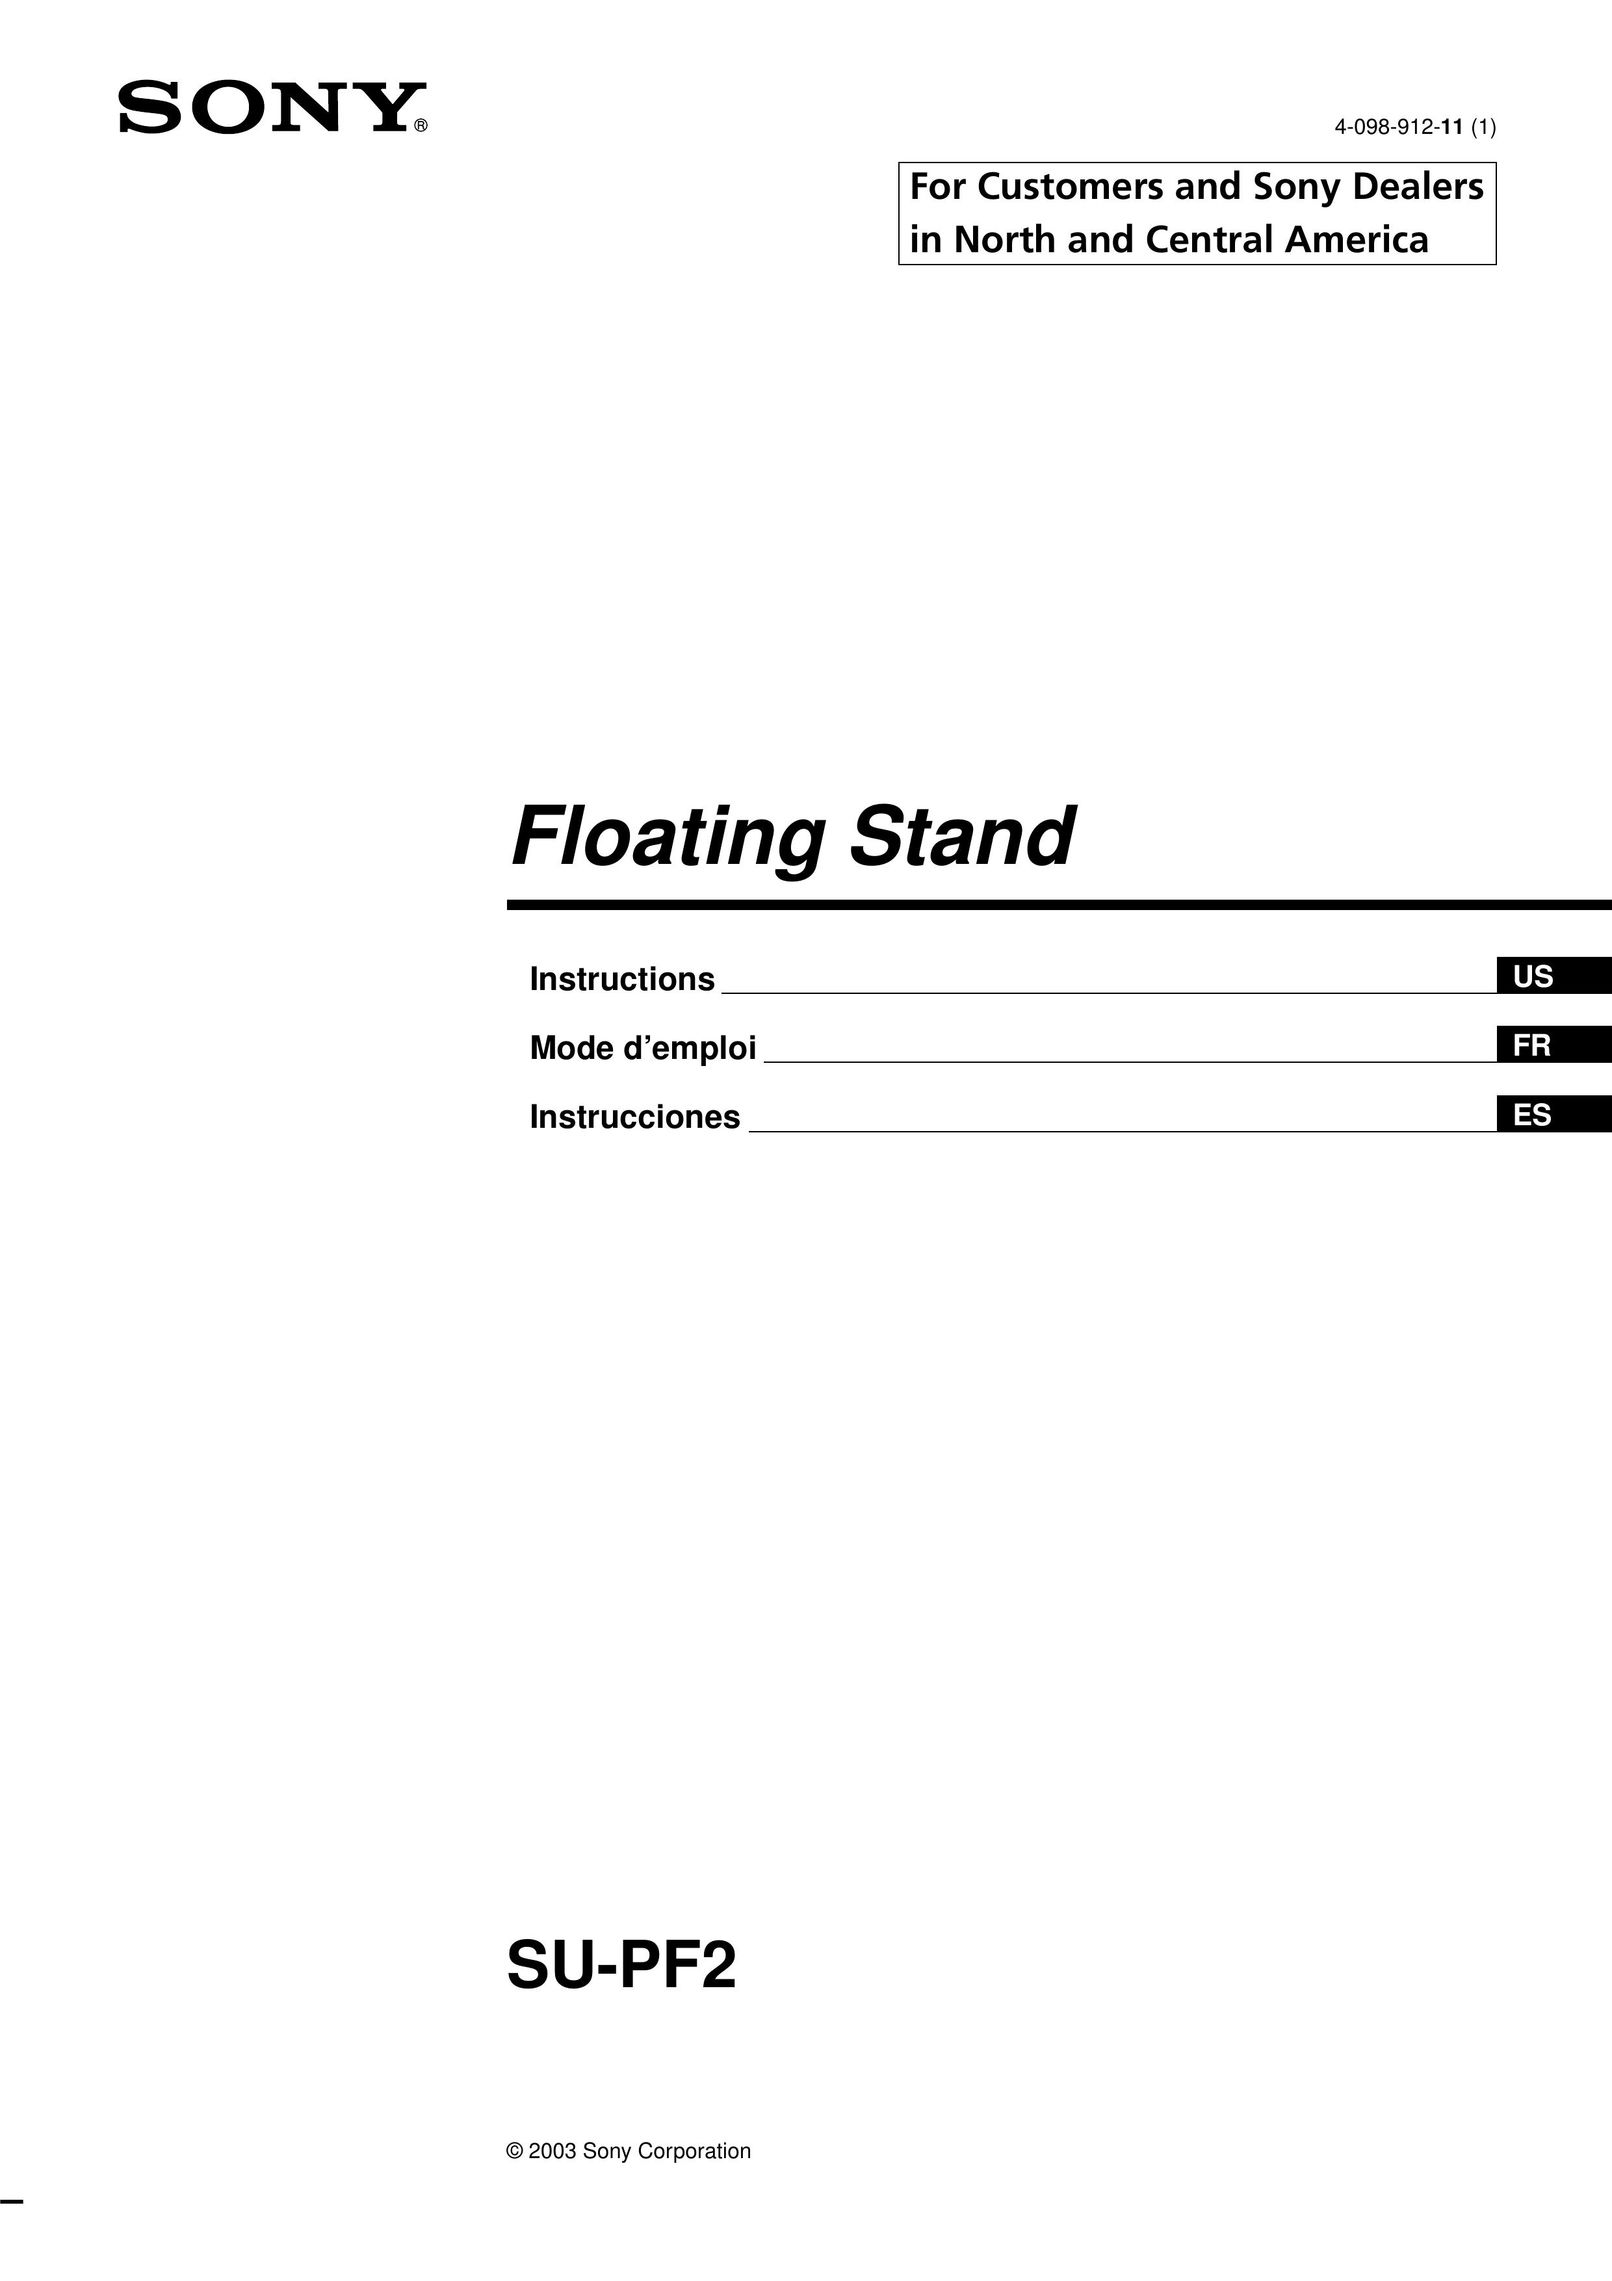 Sony SU-PF2 Indoor Furnishings User Manual